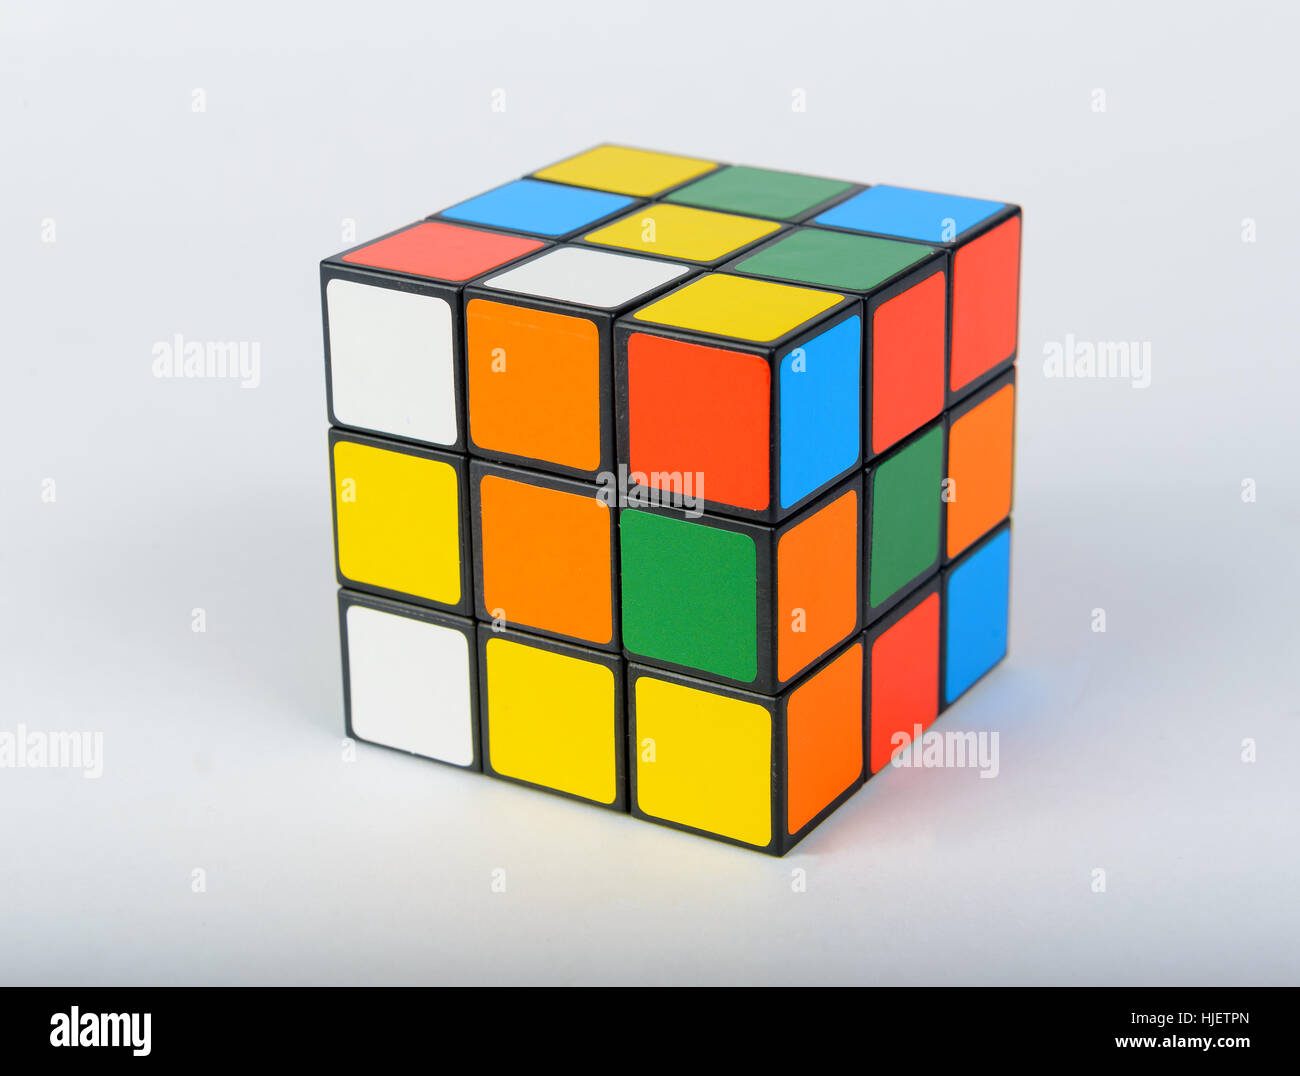 Cube rubik immagini e fotografie stock ad alta risoluzione - Alamy